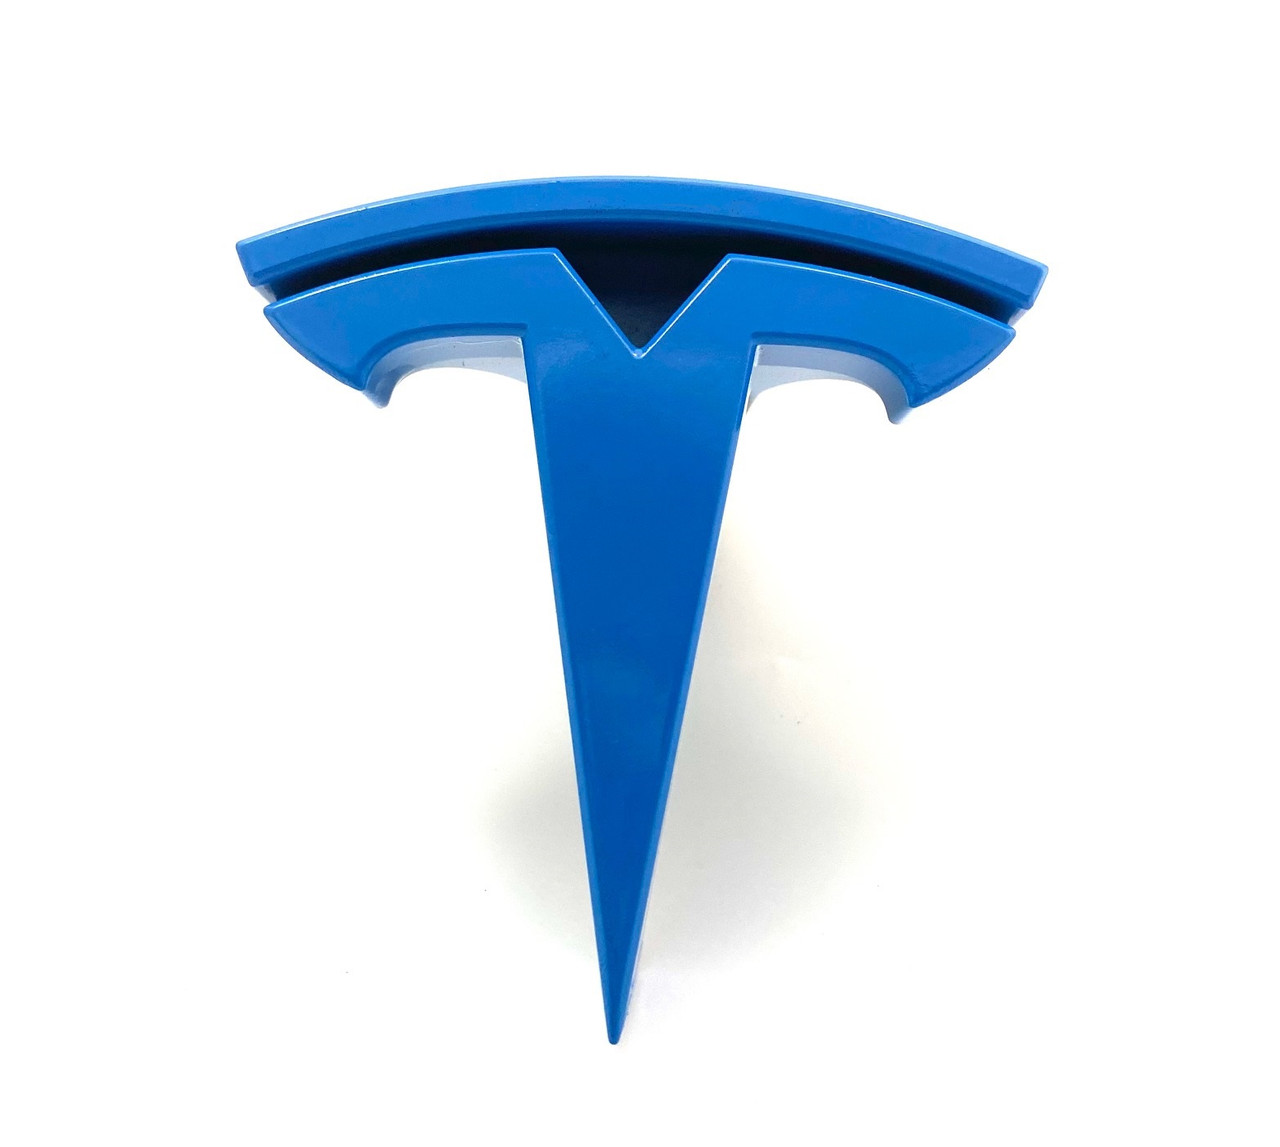 French Blue Tesla Model X S Front Assembly "T" Emblem Badge Logo